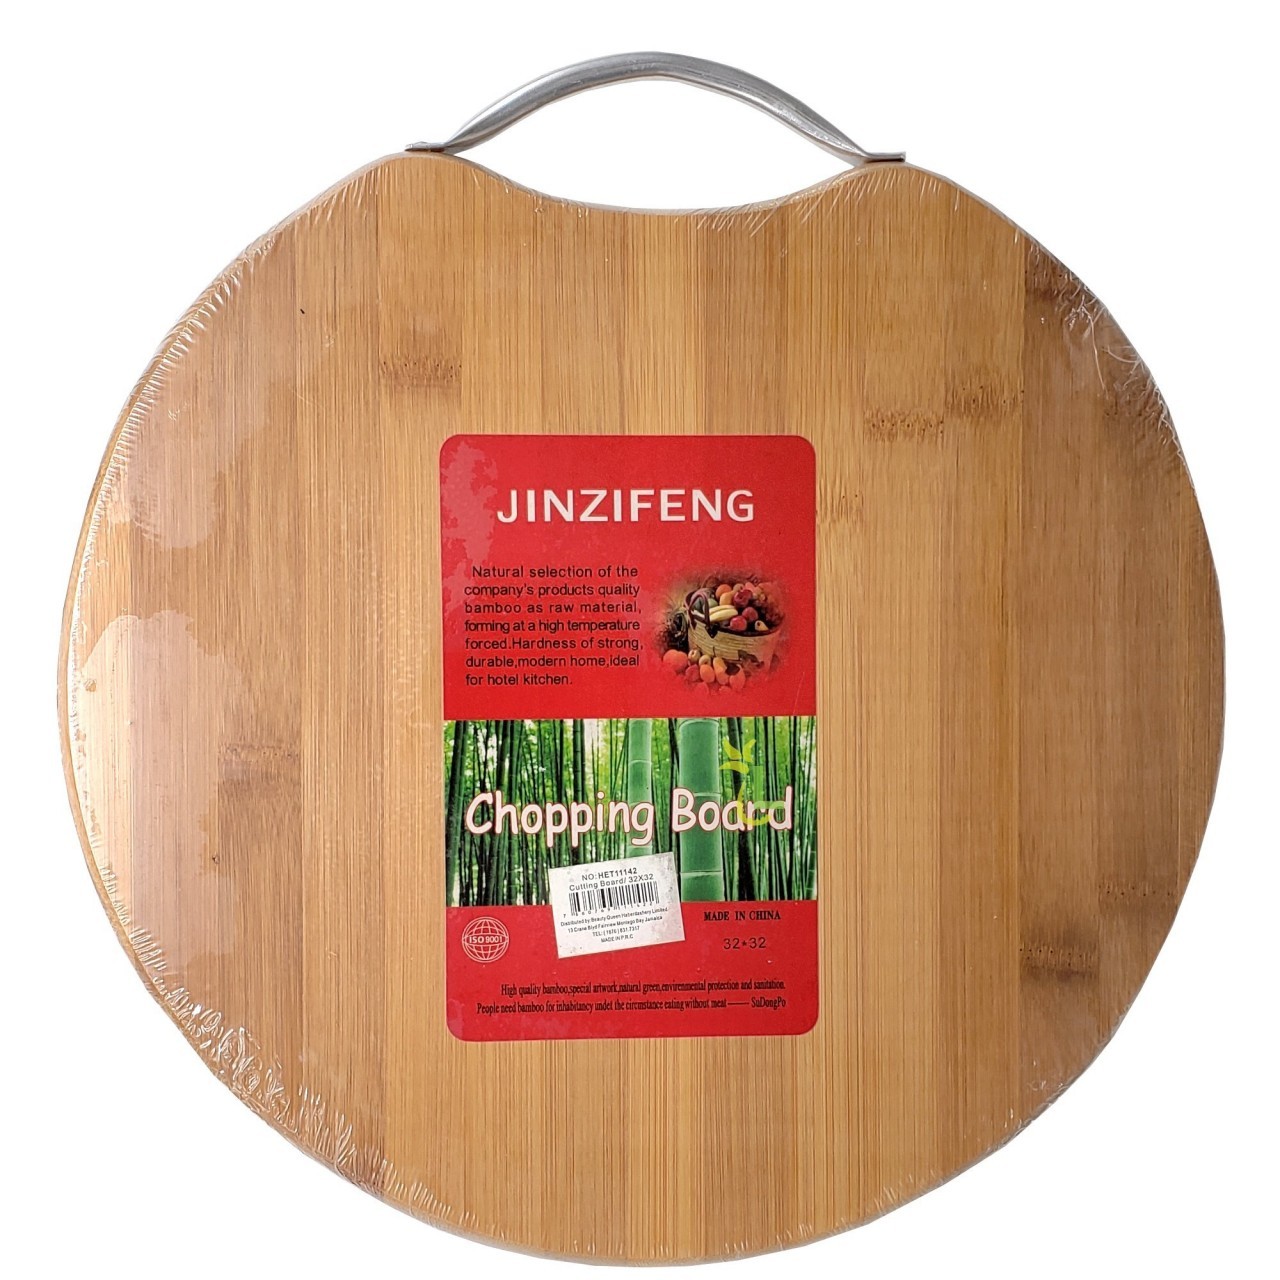 JINZIFENG CHOPPING BOARD 32x32